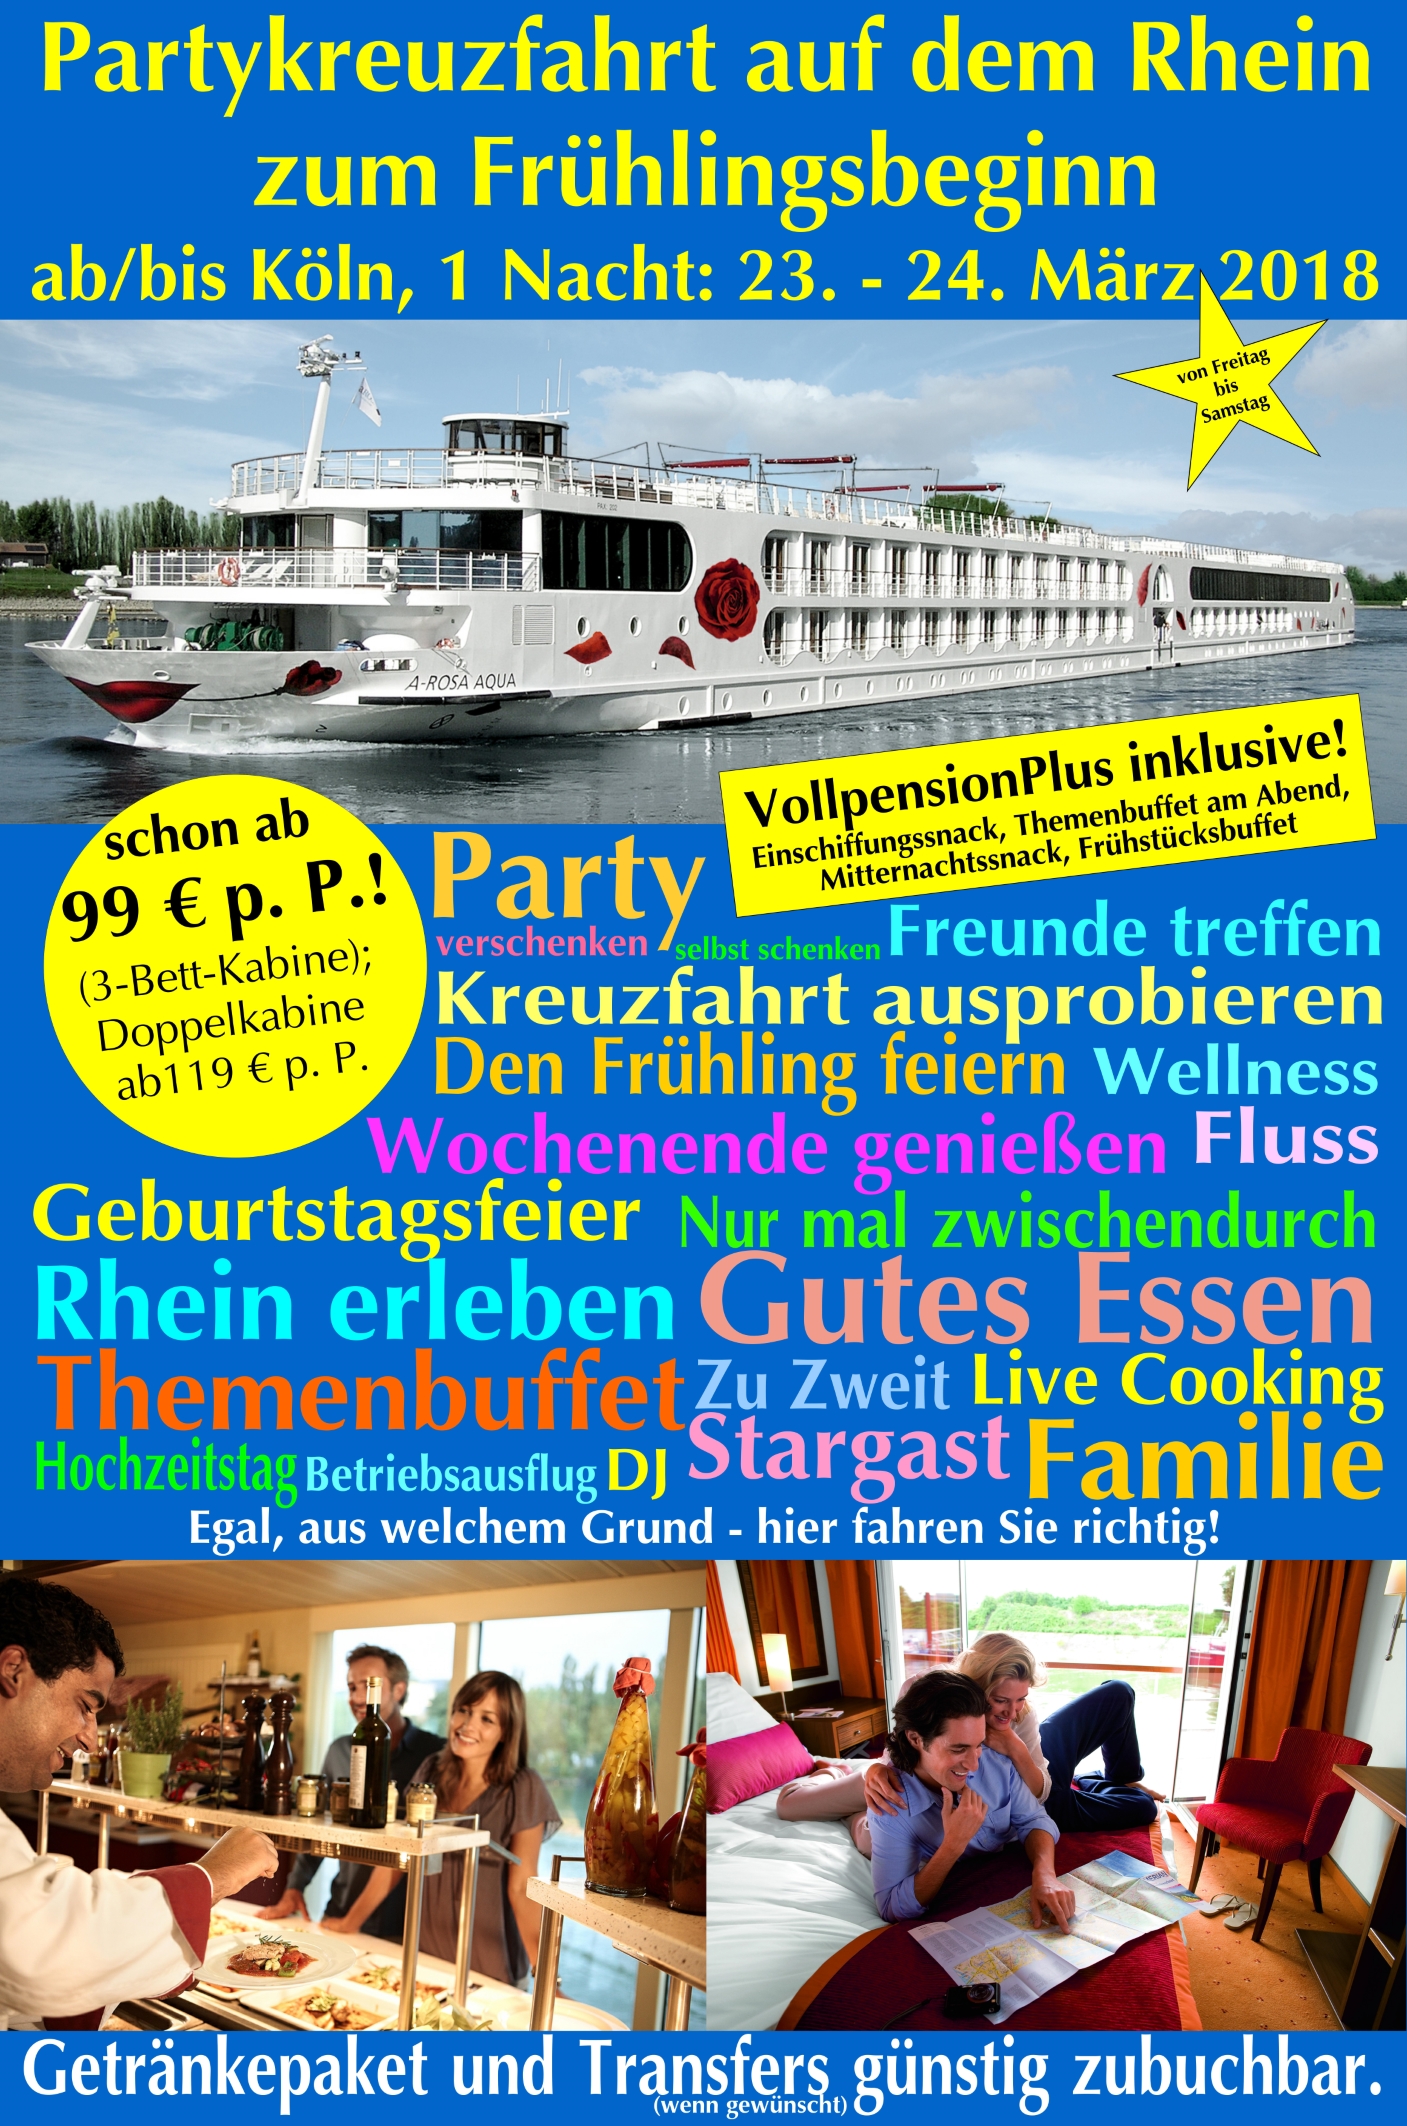 Partykreuzfahrt auf dem Rhein